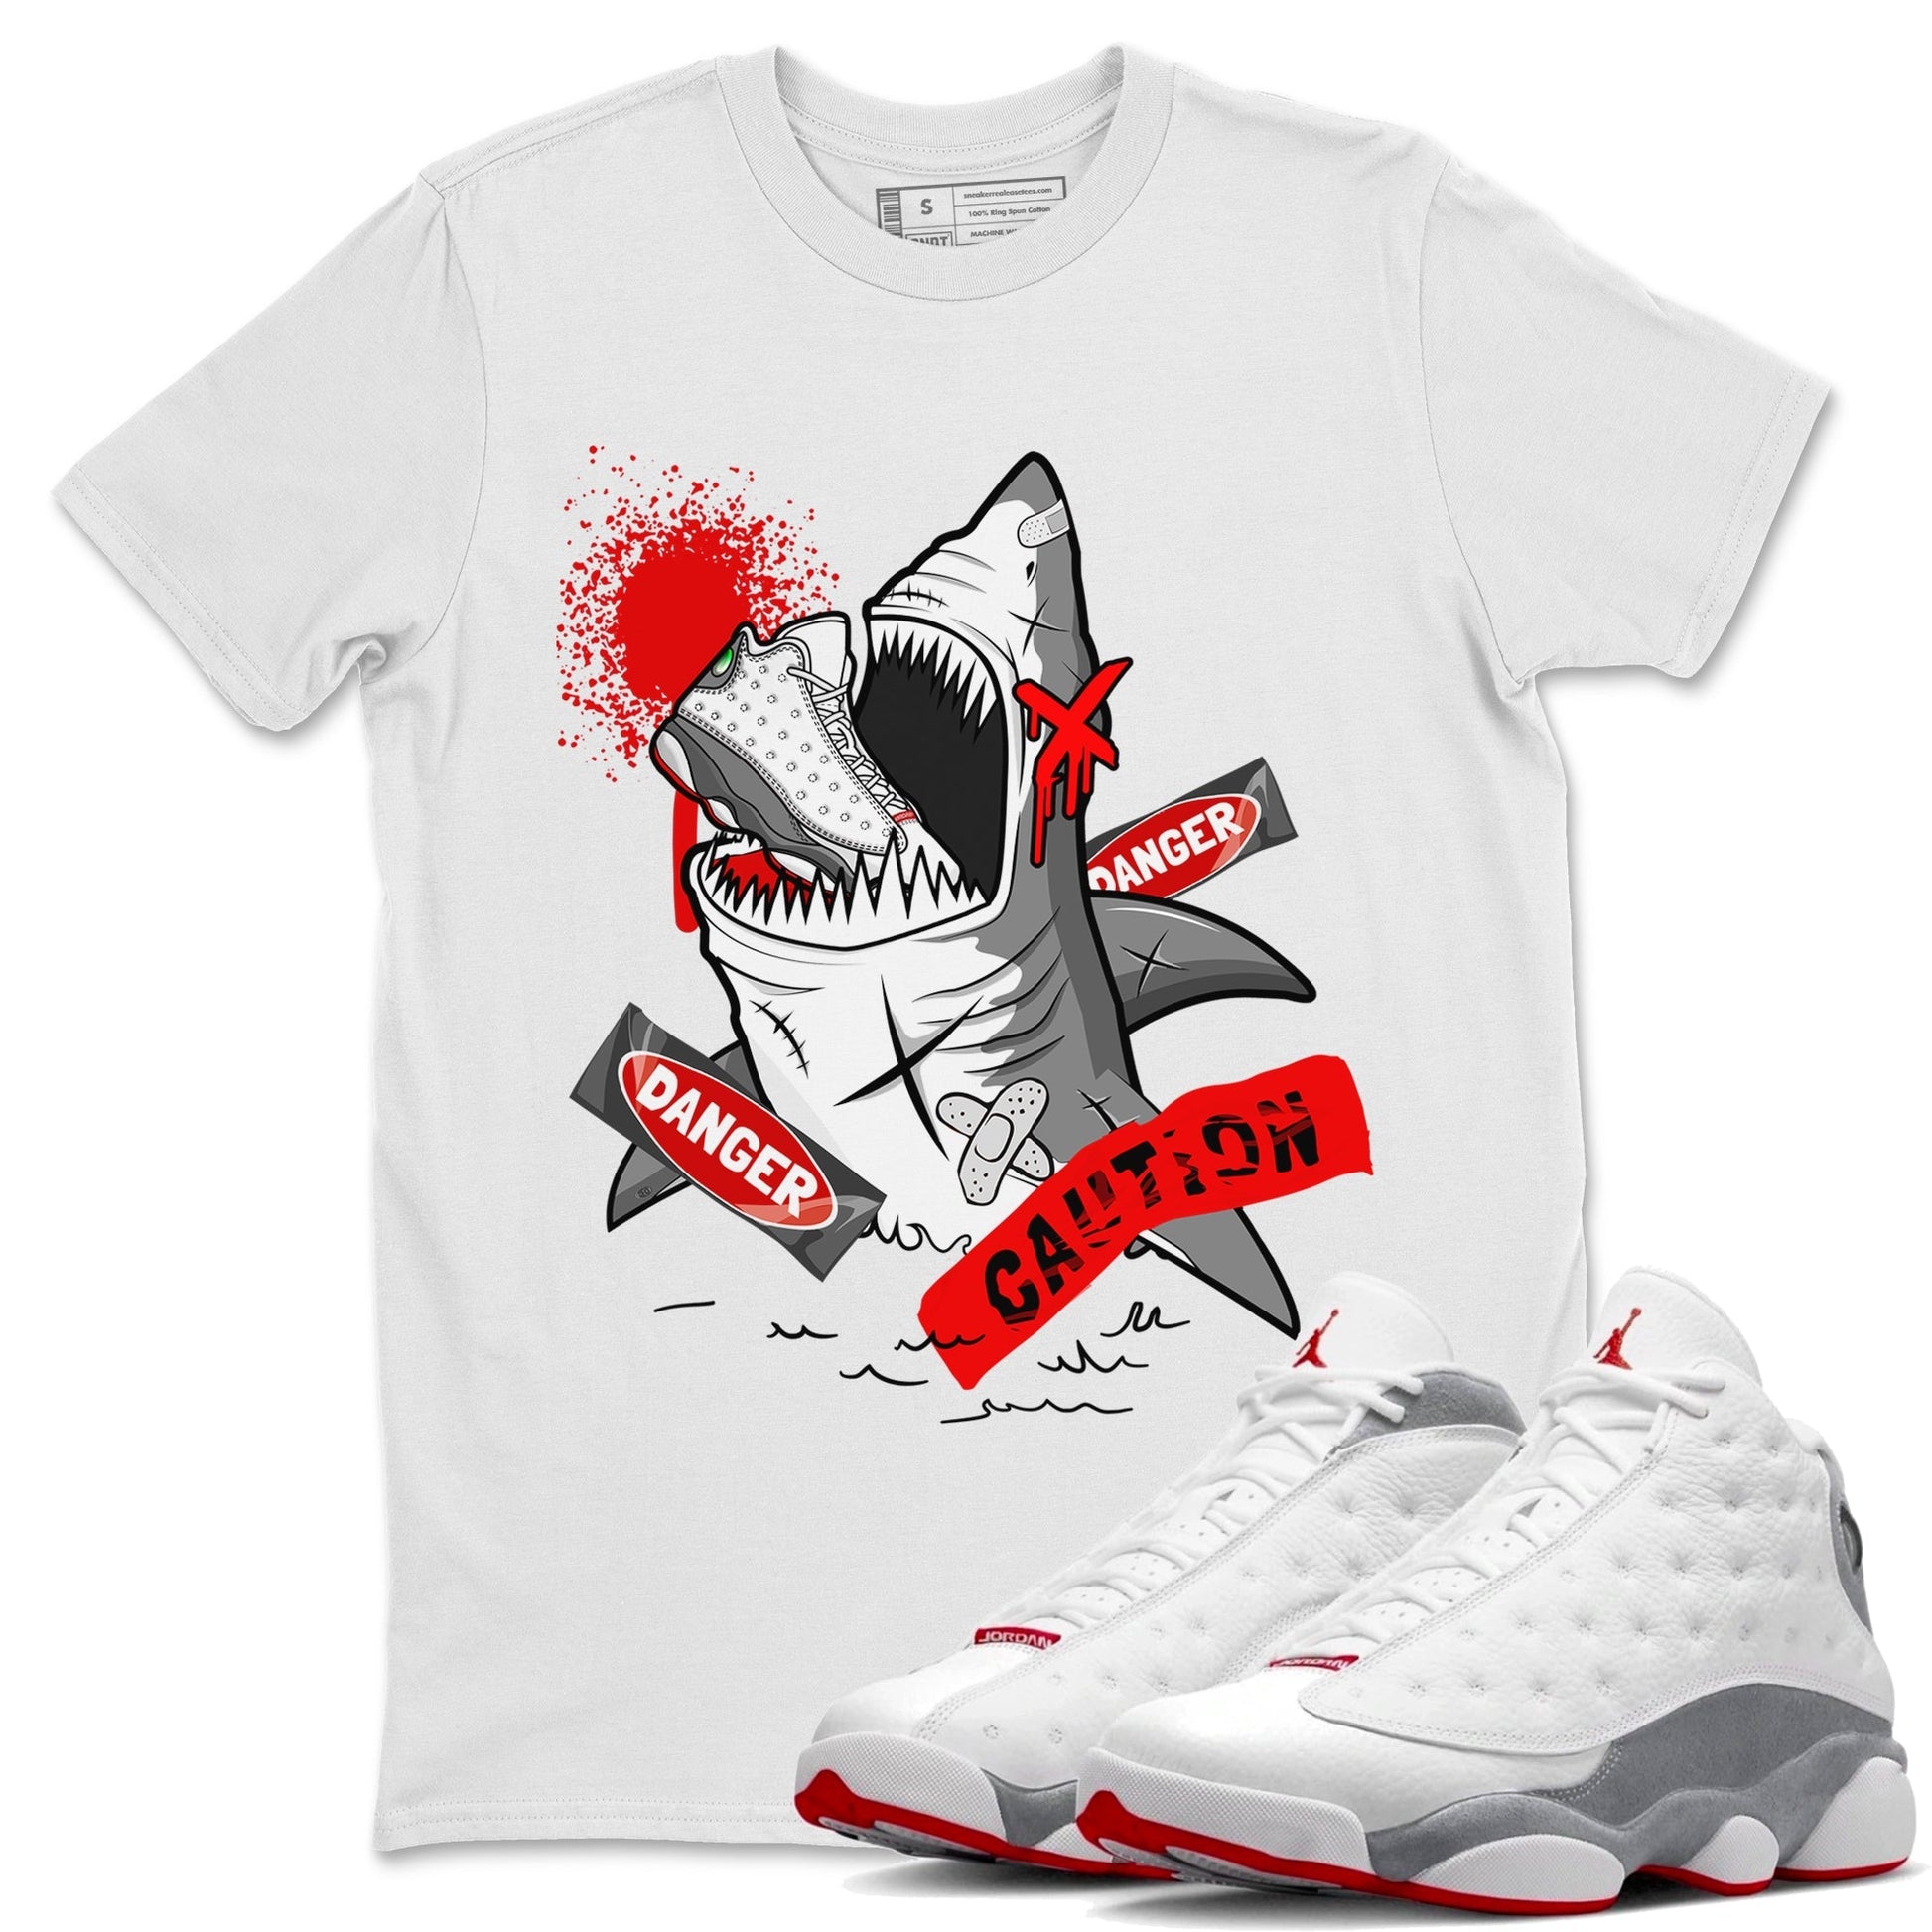 Wolf Grey 13 shirt to match jordans Dangerous Shark Streetwear Sneaker Shirt Air Jordan 13 Wolf Grey Drip Gear Zone Sneaker Matching Clothing Unisex White 1 T-Shirt